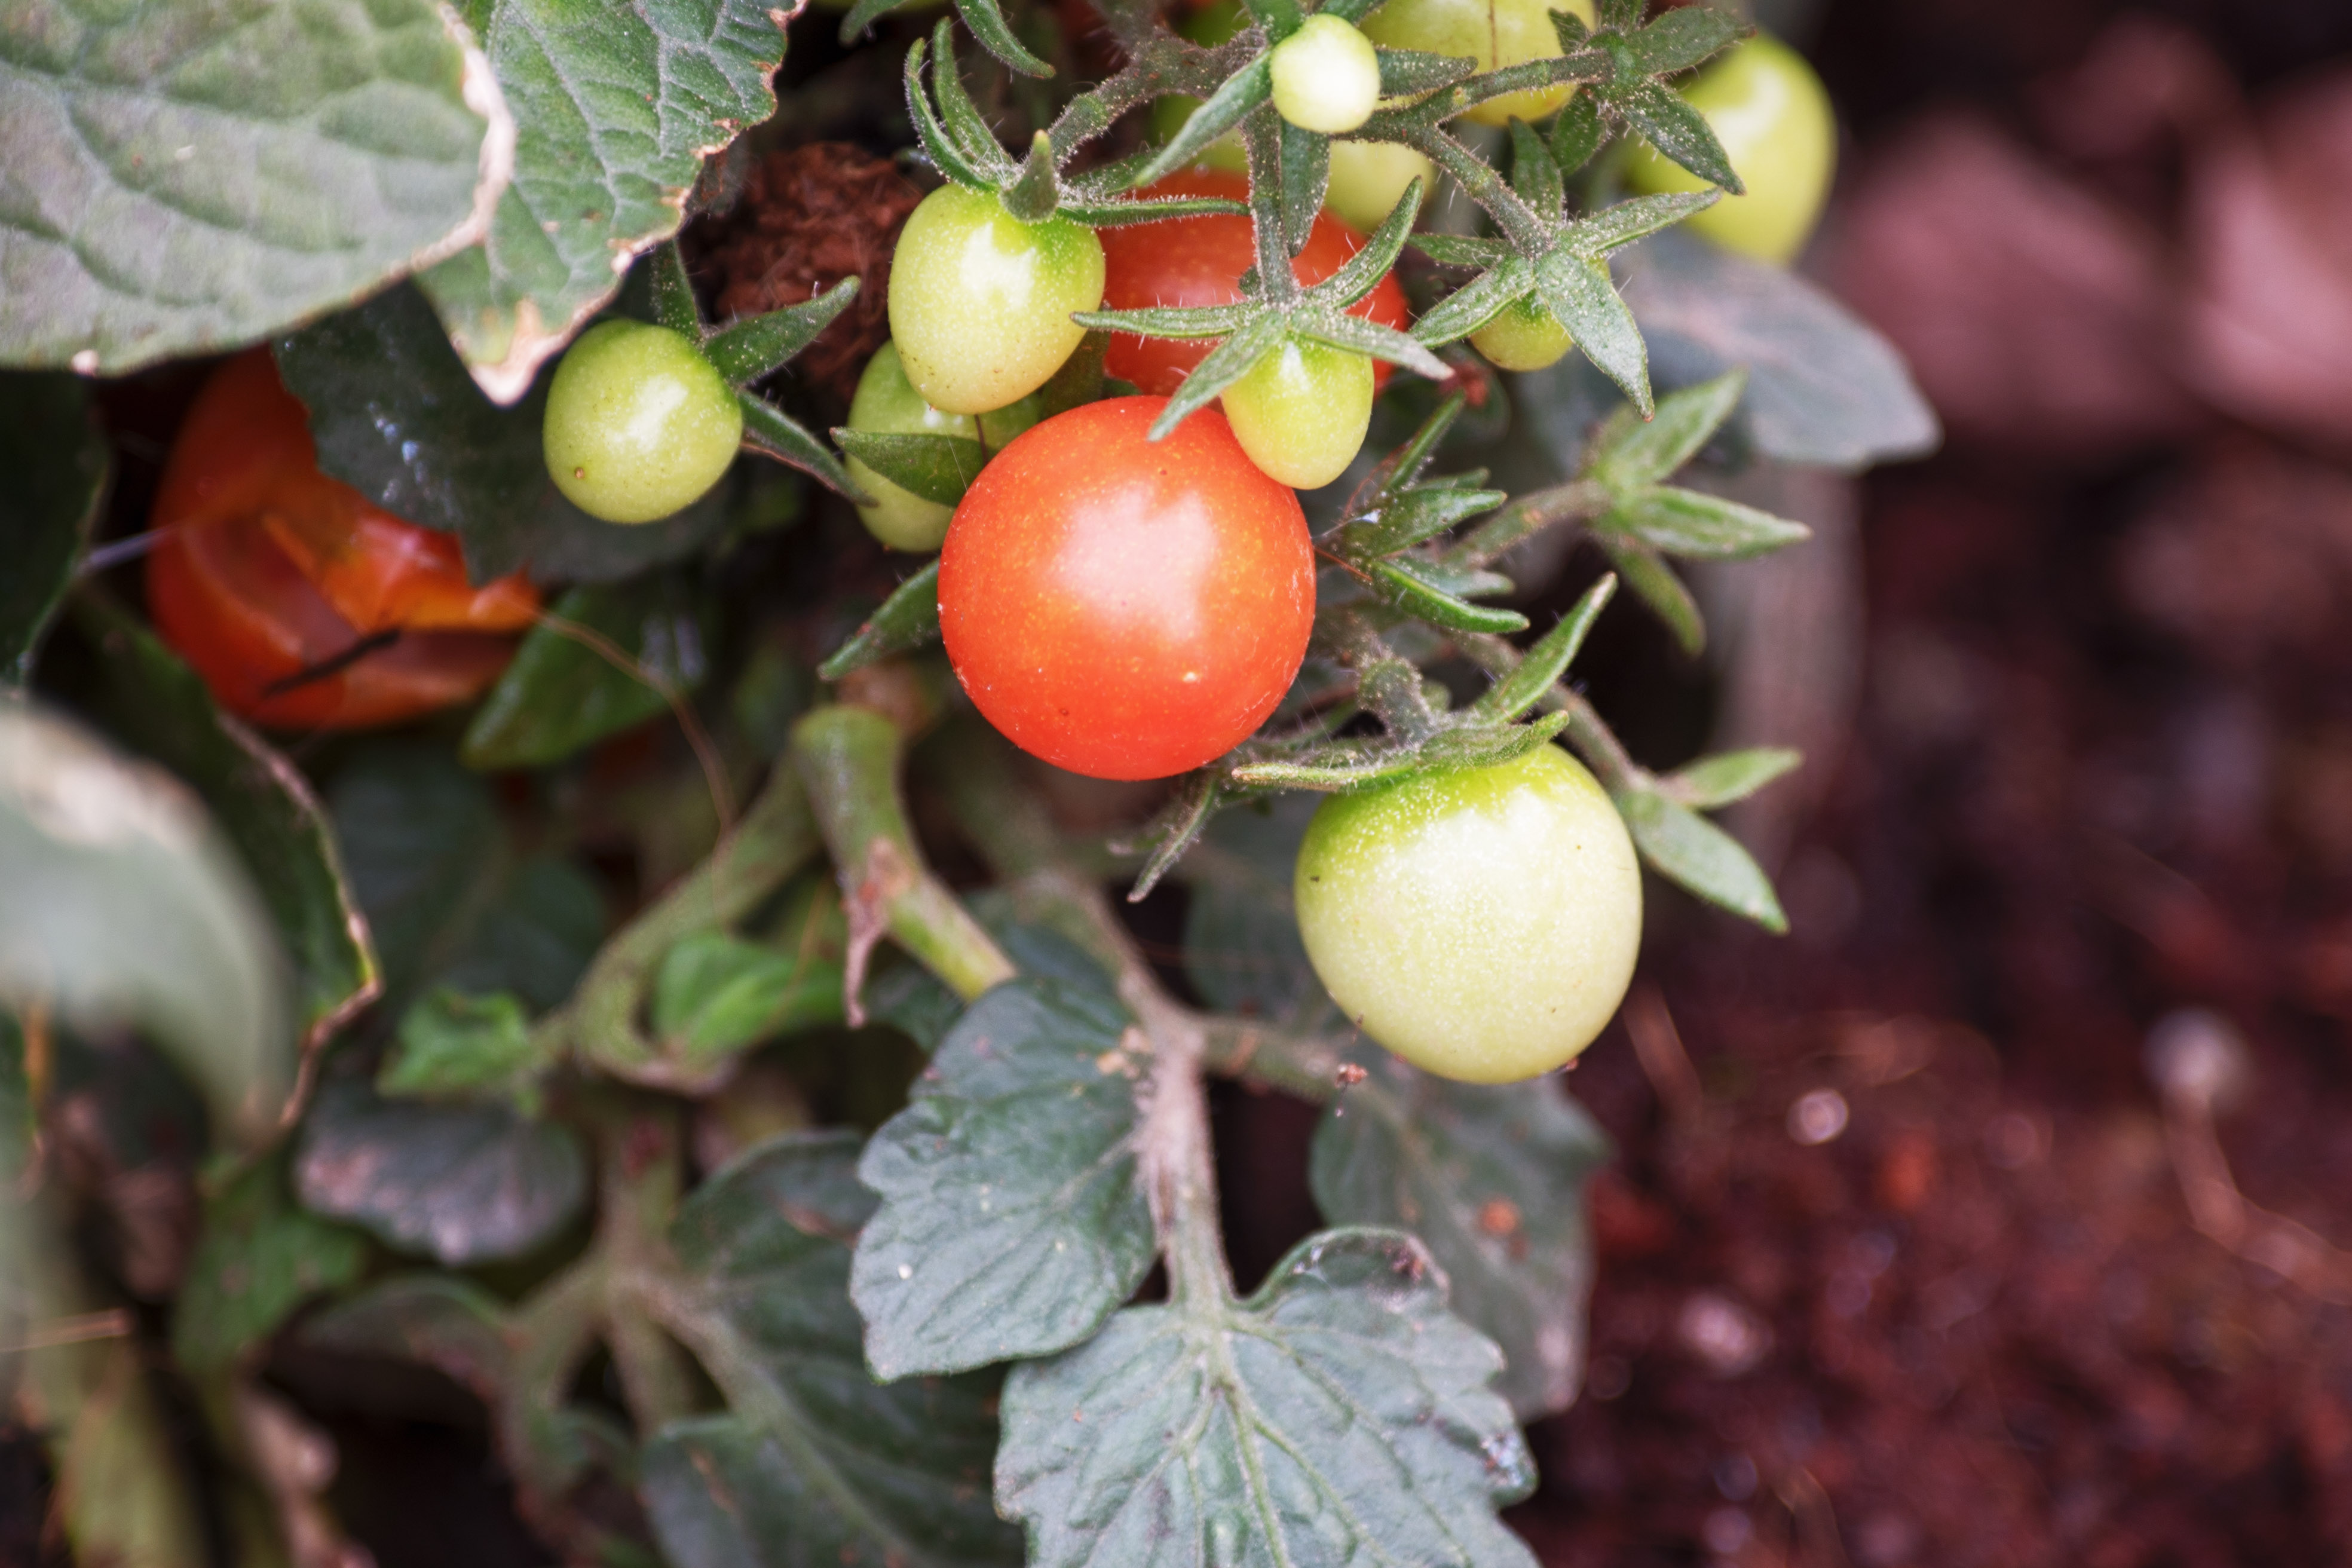 摄影/文字:芳草地 在植物园的植物普及园去拍了一组小番茄,而且是野生